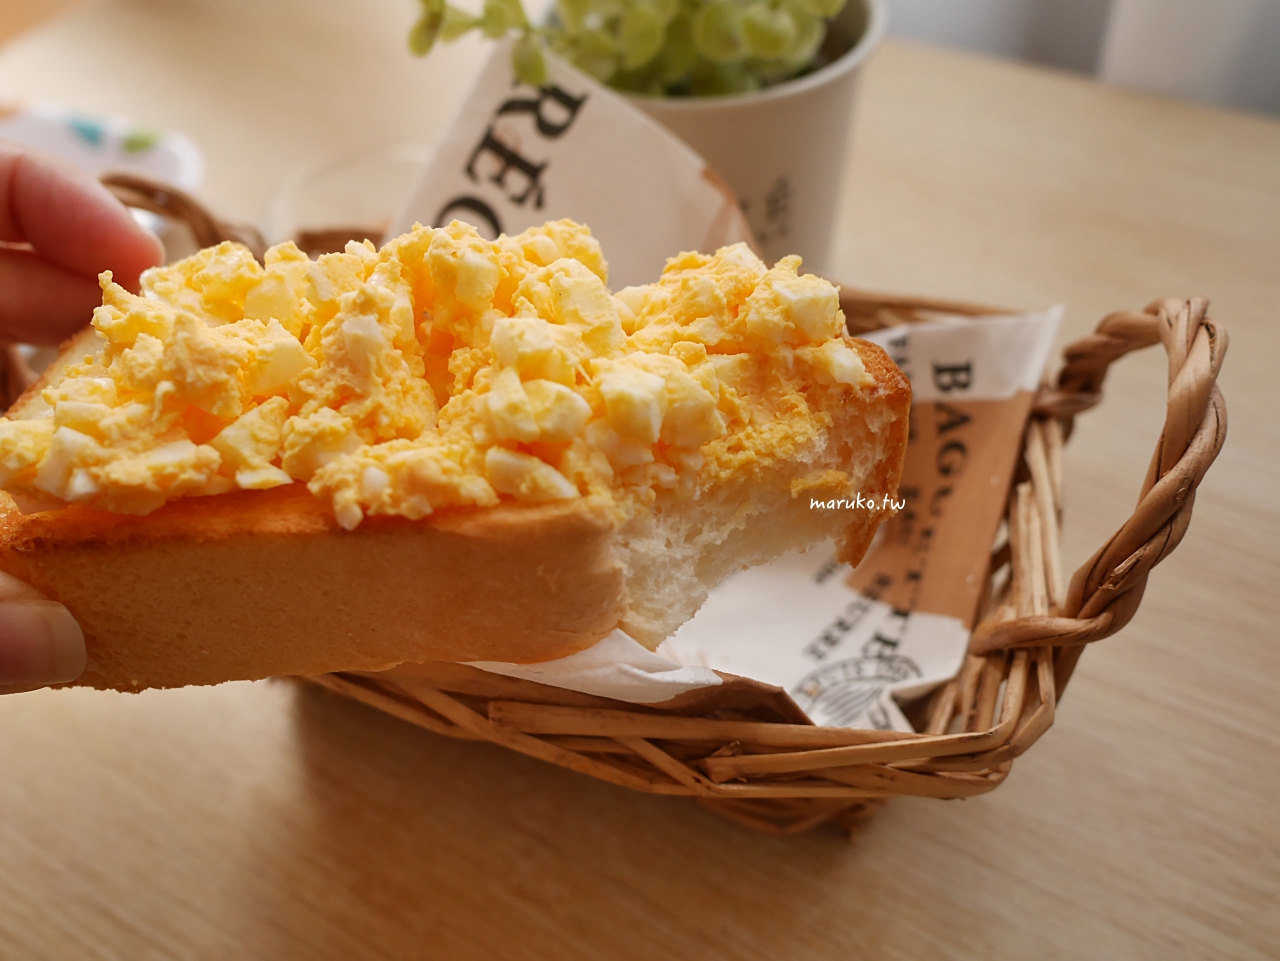 【食譜】日式蛋沙拉 日本咖啡館的蛋沙拉做法 簡單早餐吐司食譜 @Maruko與美食有個約會